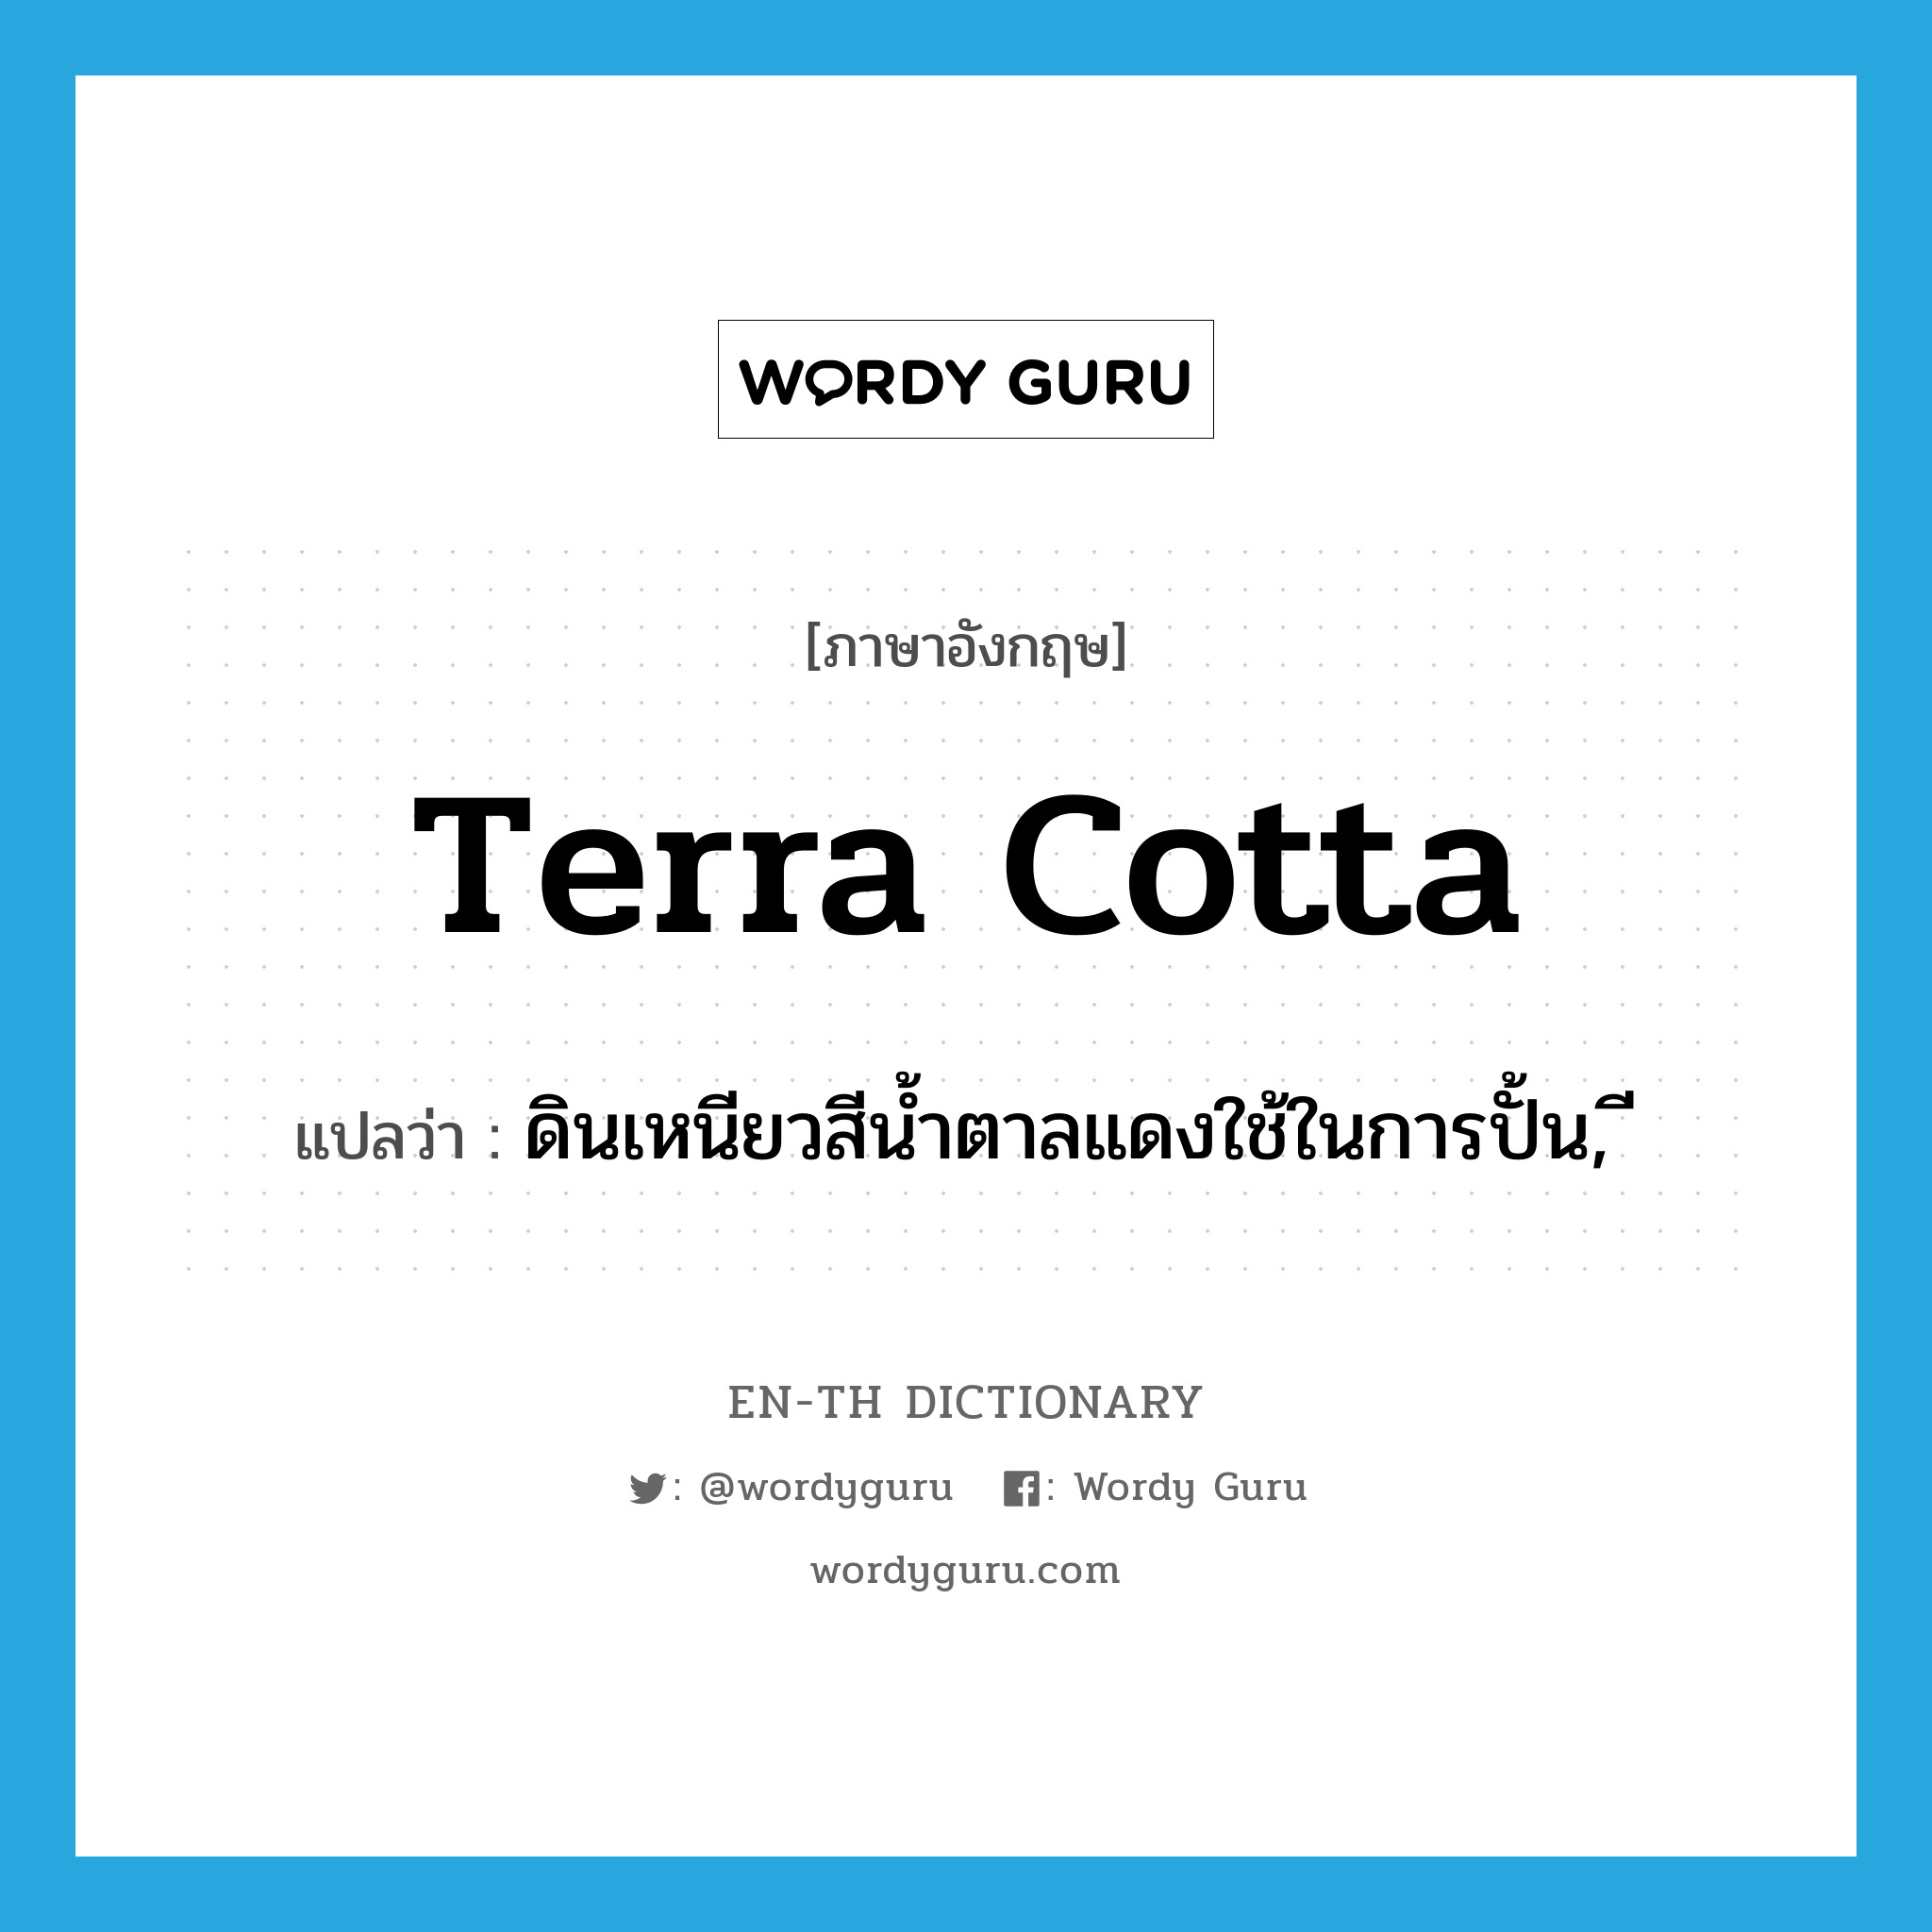 terra cotta แปลว่า?, คำศัพท์ภาษาอังกฤษ terra cotta แปลว่า ดินเหนียวสีน้ำตาลแดงใช้ในการปั้น, ี ประเภท N หมวด N